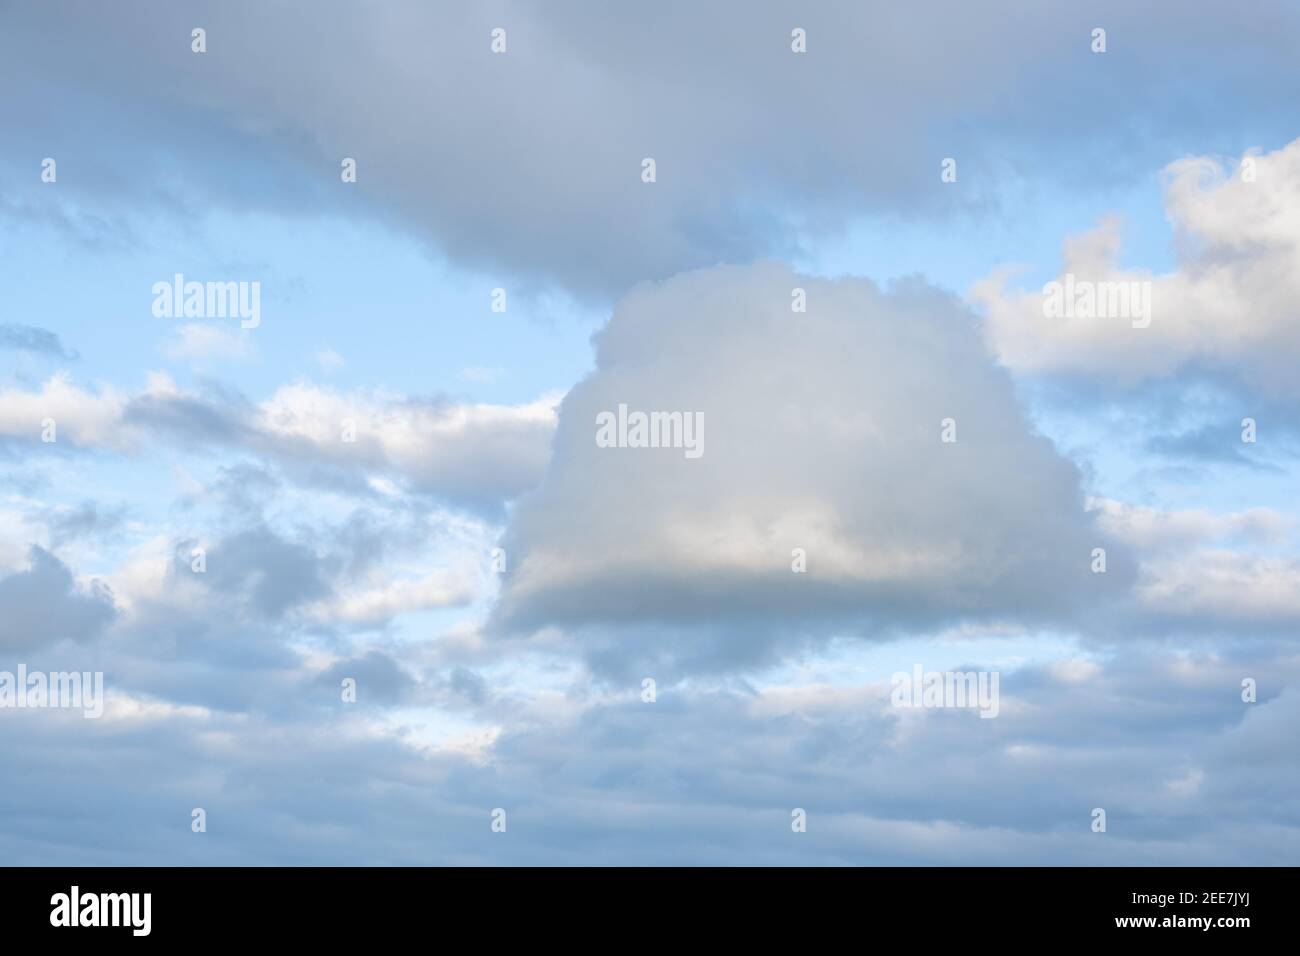 Eine Wolke von einer seltsamen und interessanten Form vor einem Hintergrund von anderen Wolken und einem blauen Himmel. Ort für Ihren Text. Stockfoto